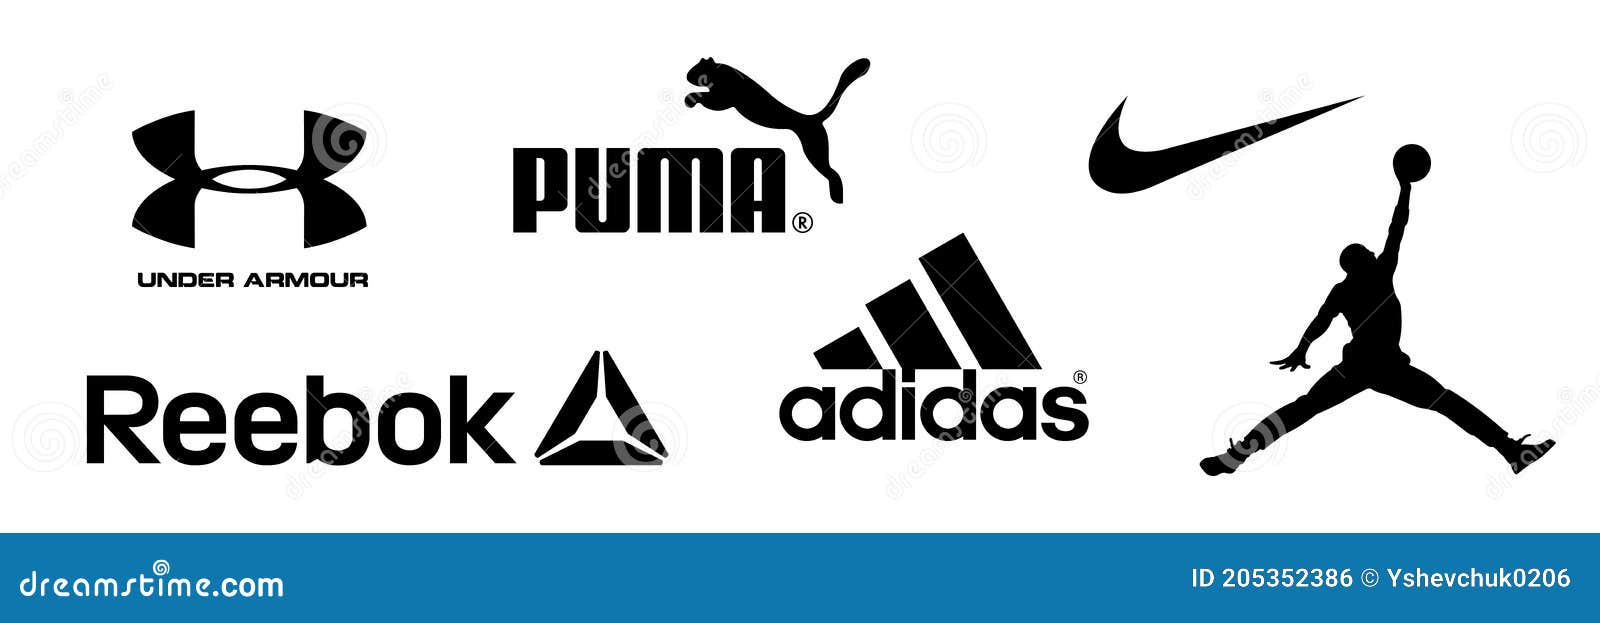 Reebok Nike Jordan Adidas Puma Bajo Logotipos Armadura De Equipo Deportivo Y Compañía Ropa Deportiva. Diciembre Foto editorial - Ilustración de objeto, muestra: 205352386